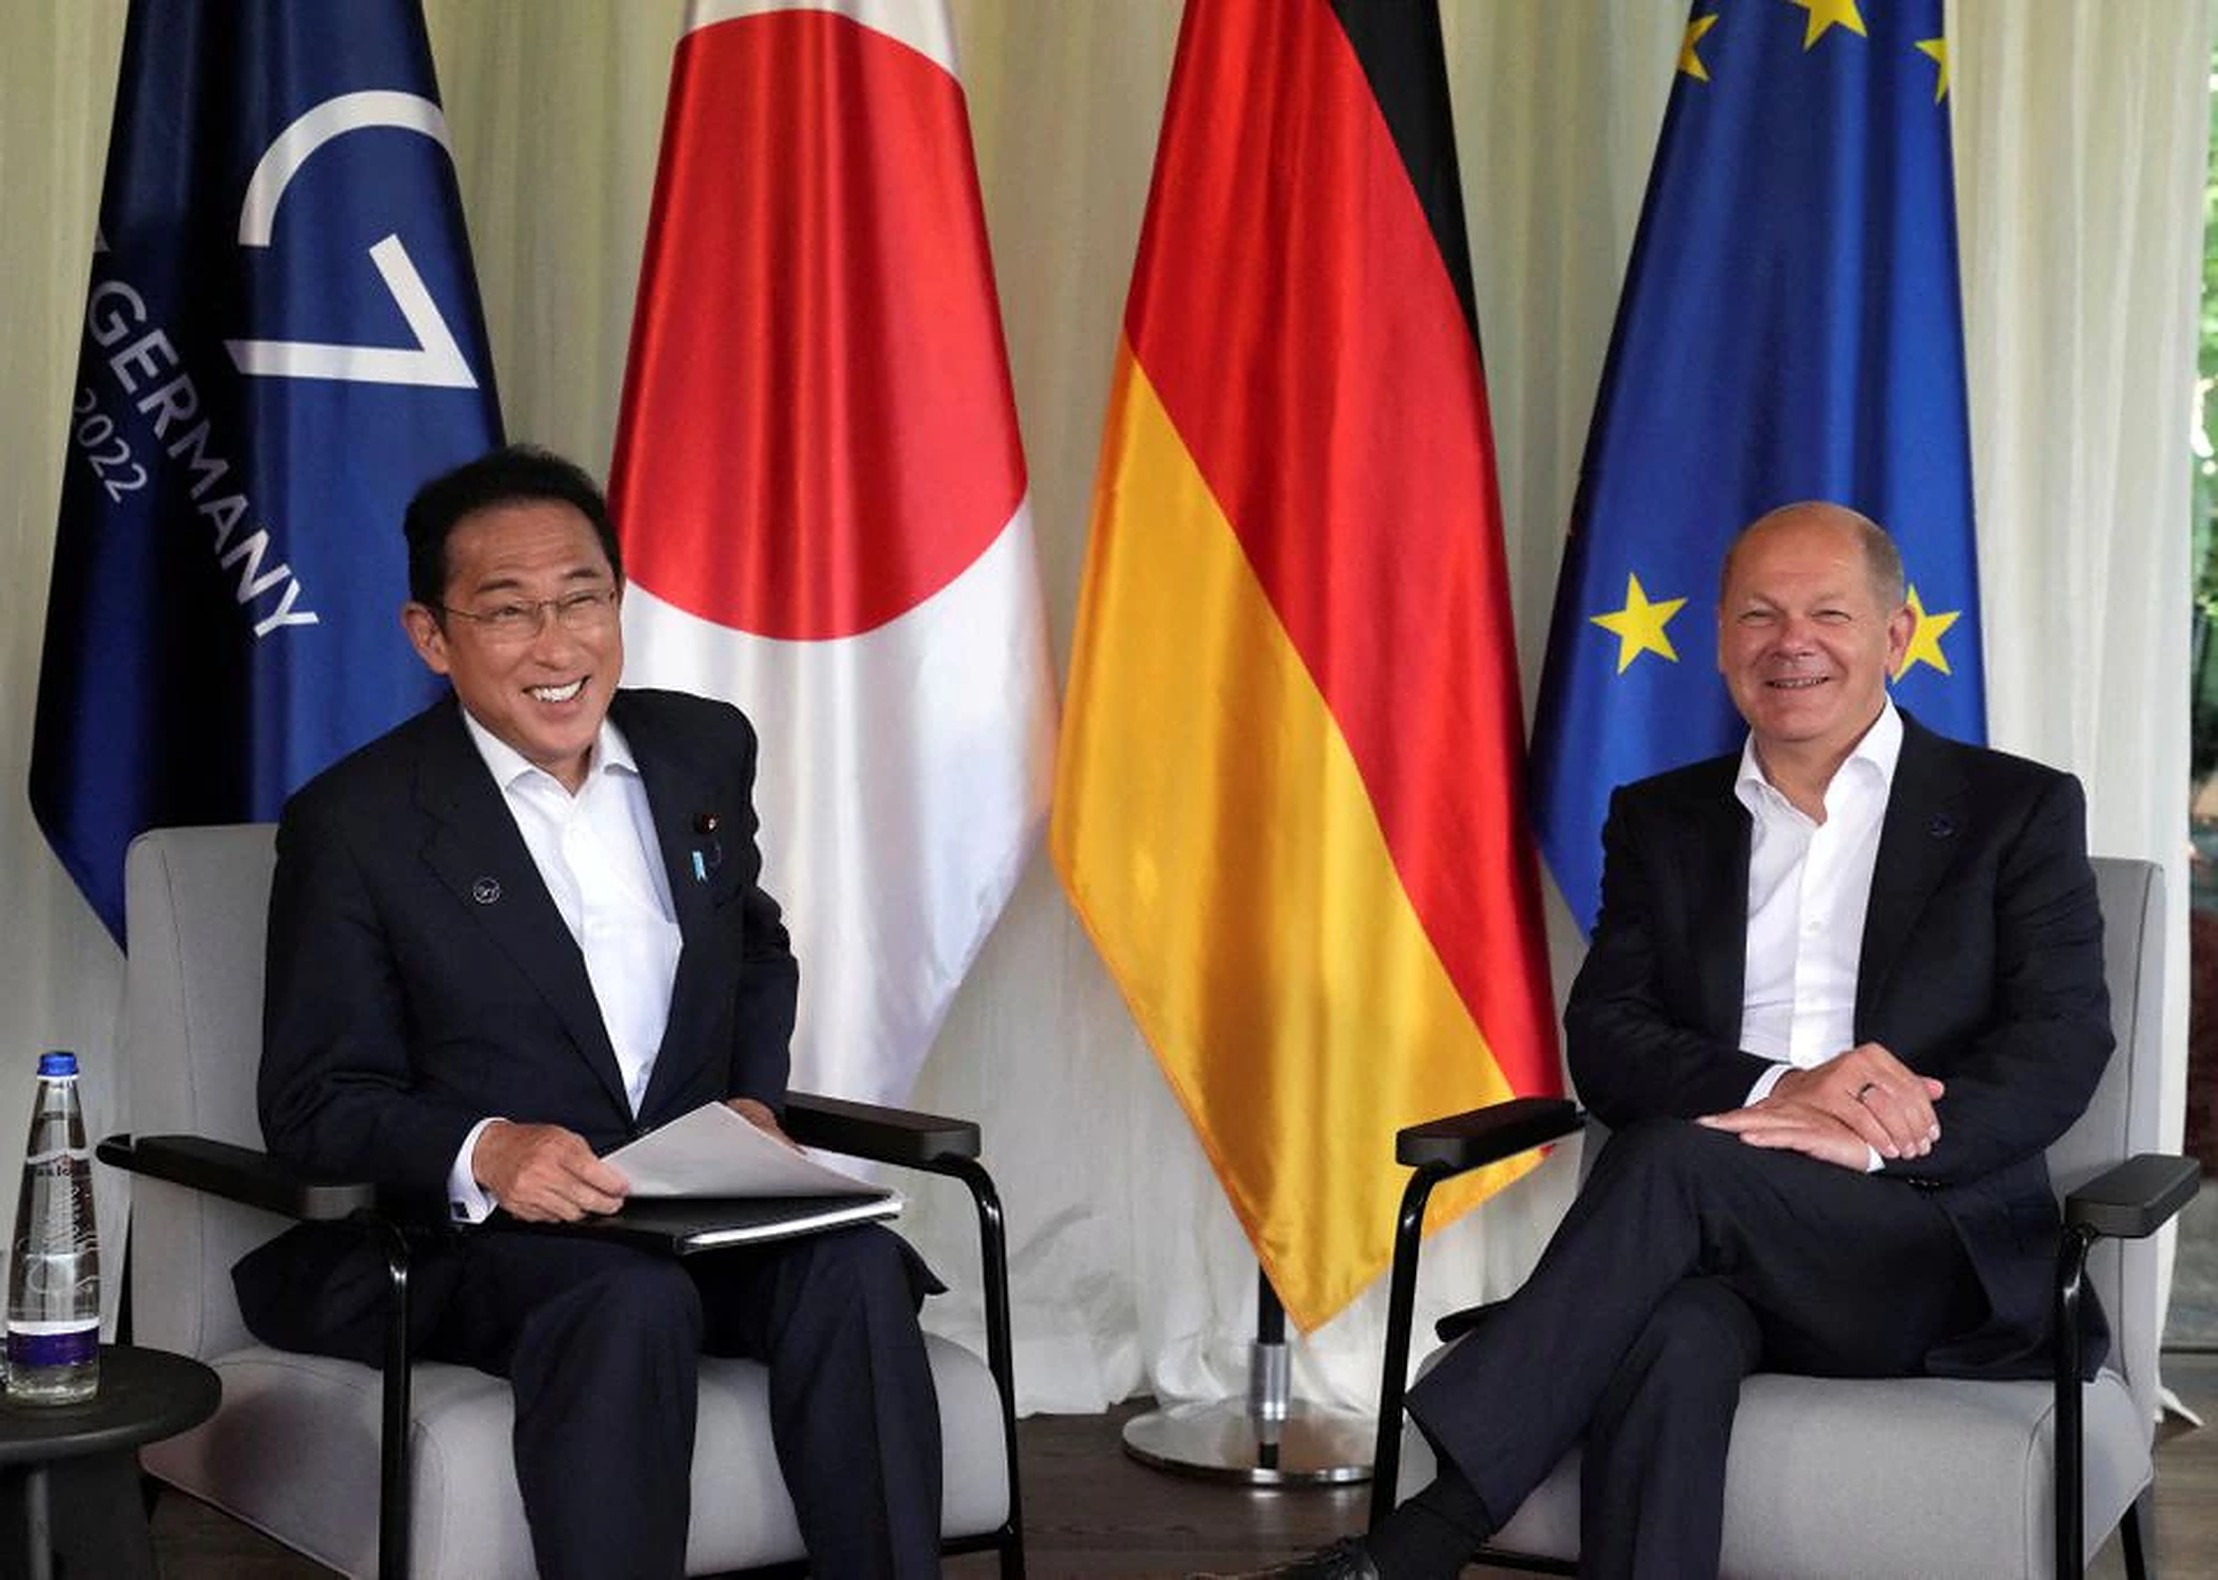 O nouă colaborare neașteptată! Germania și Japonia lucrează împreună în domeniul securității economice